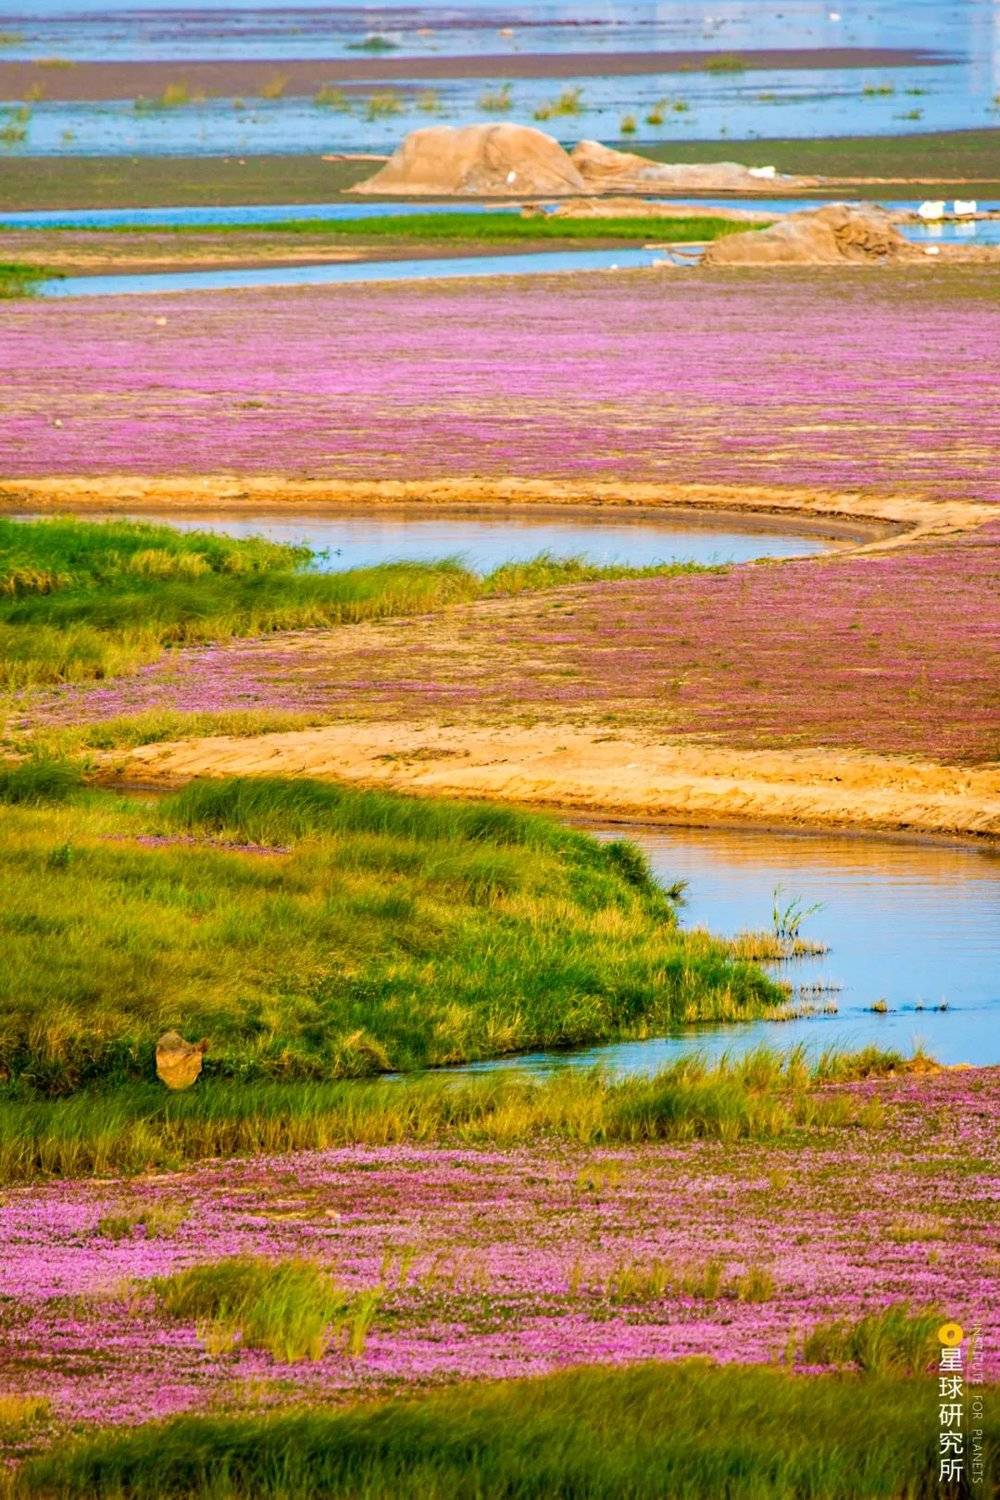 蓼子花海，拍摄于都昌马影湖，摄影师@傅建斌